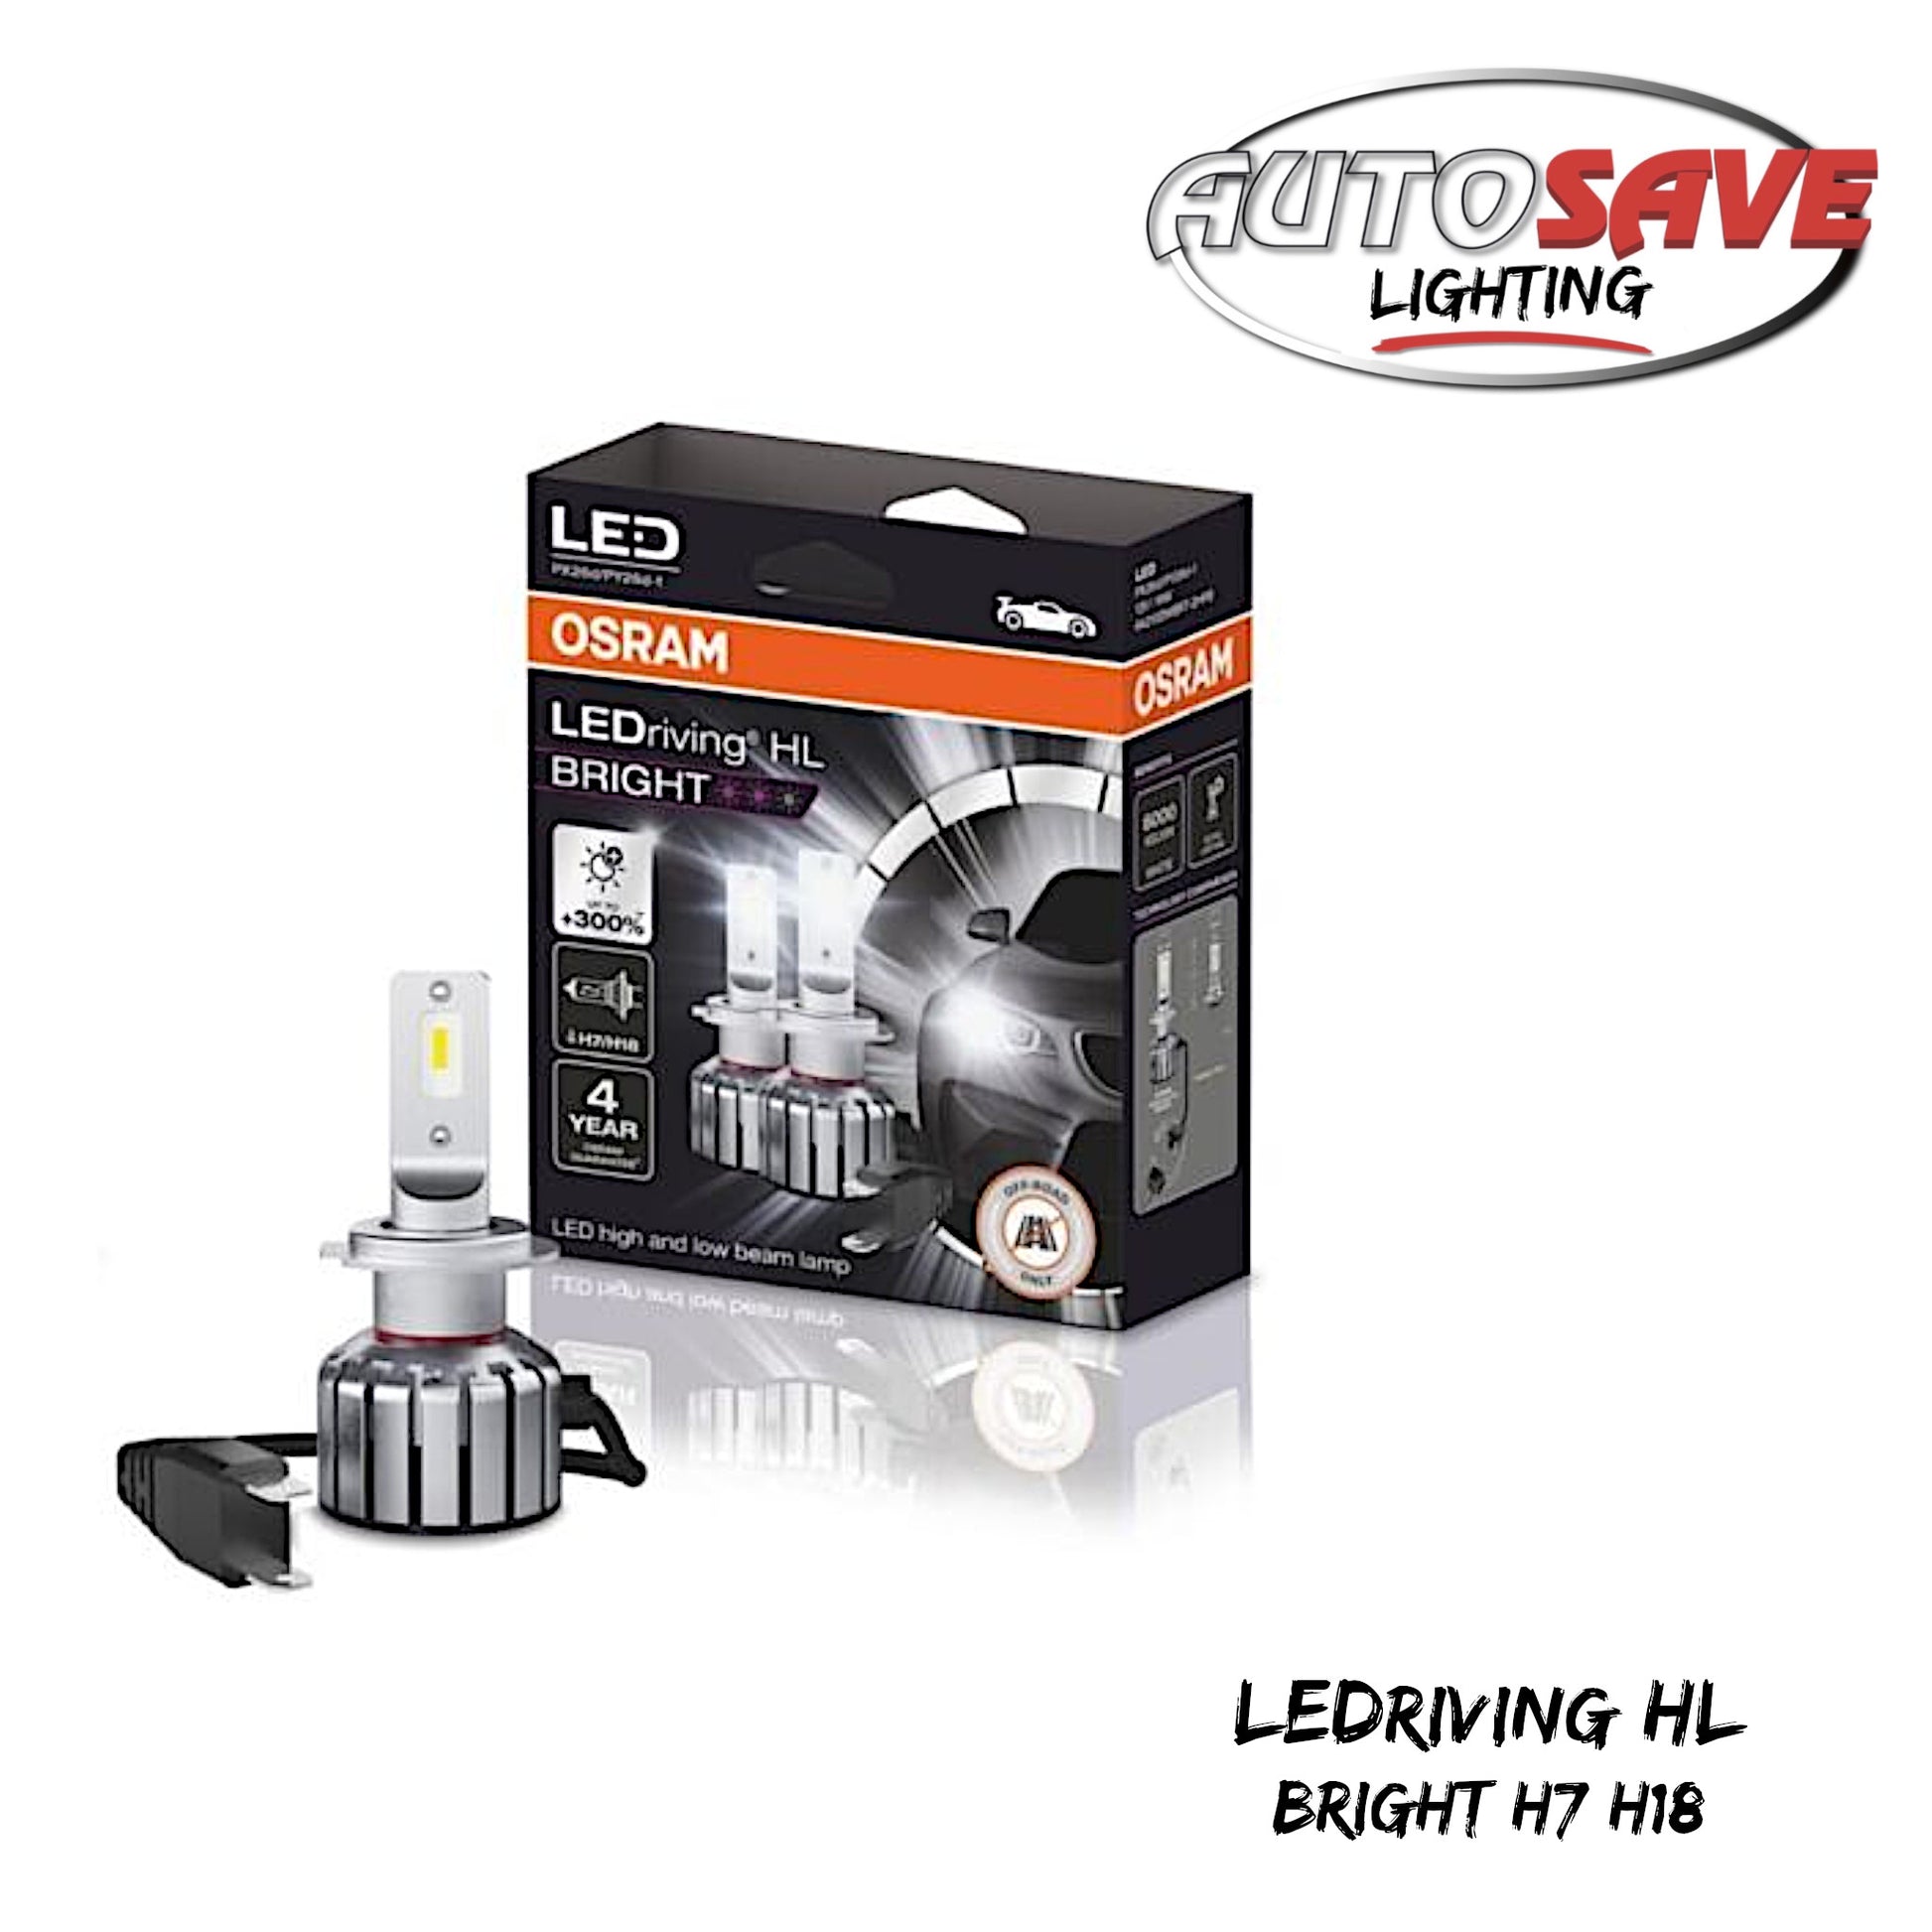 LEDriving HL EASY H7/H18